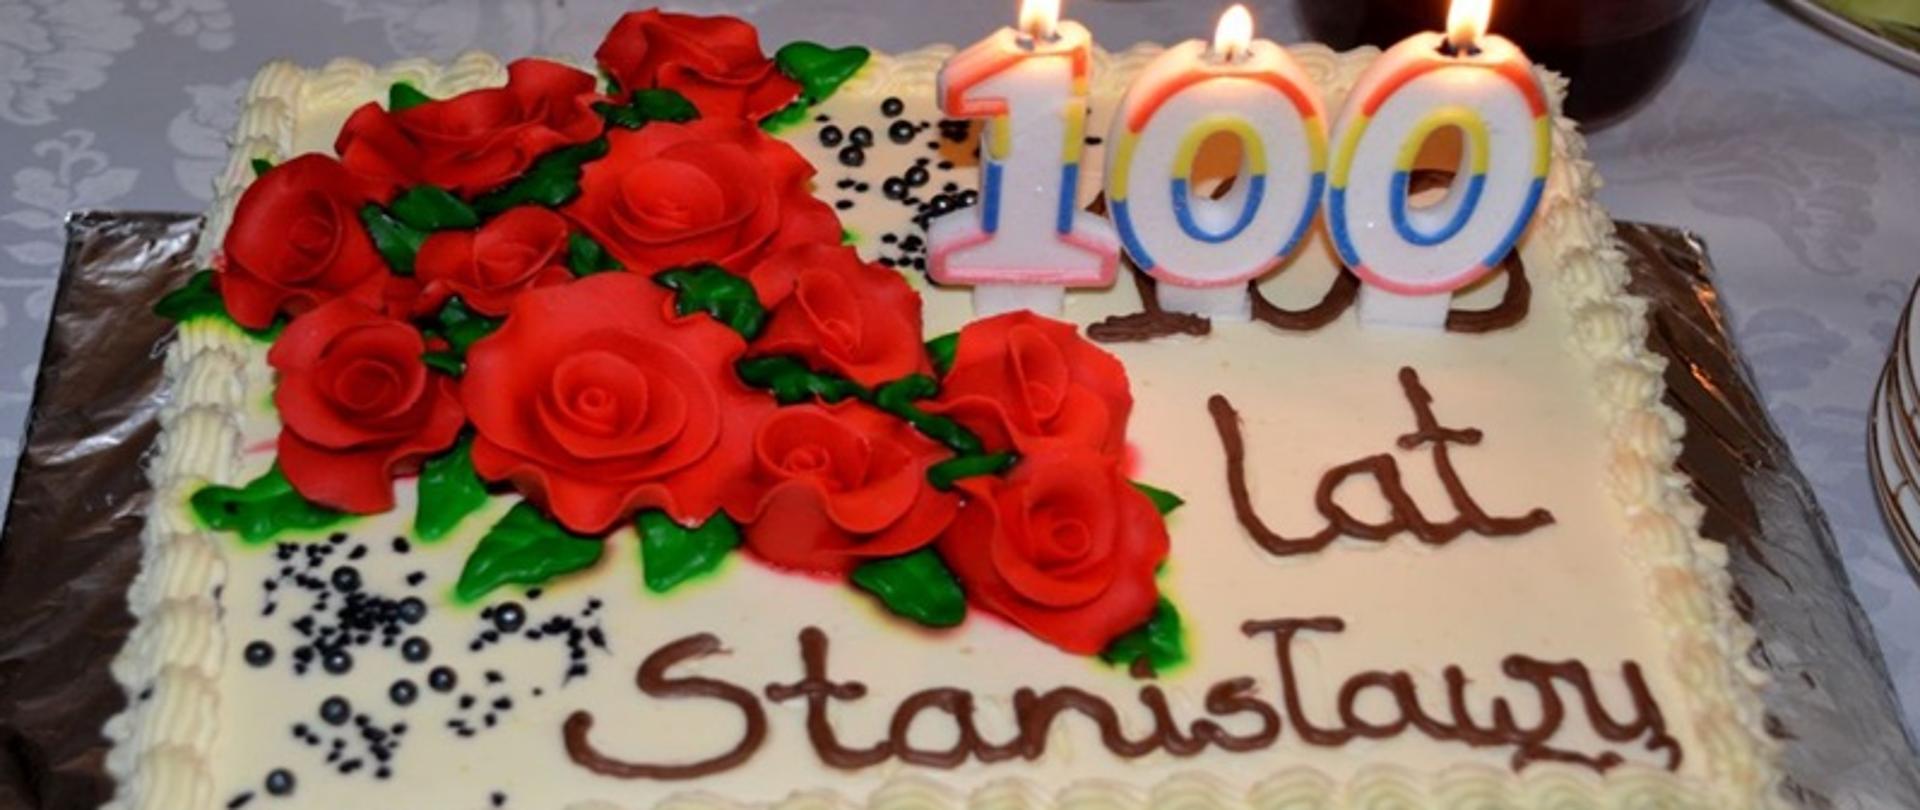 Na zdjęciu znajduje się tort z napisem 100 lat Stanisławy. Tort jest koloru białego z umieszczonymi na nim czerwonymi różami.